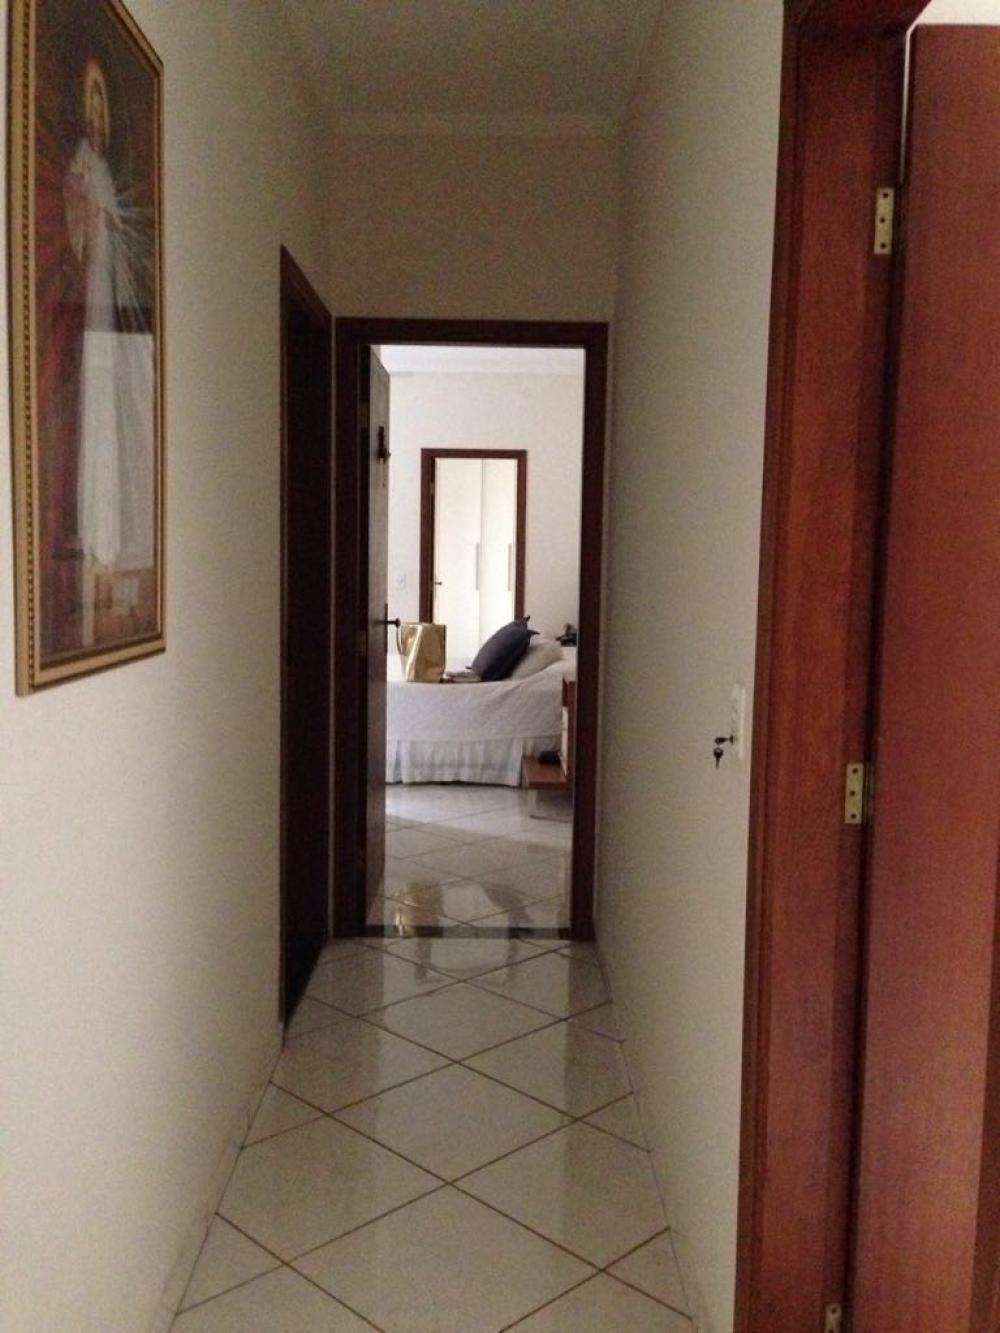 Comprar Casa / Padrão em São José do Rio Preto apenas R$ 450.000,00 - Foto 10